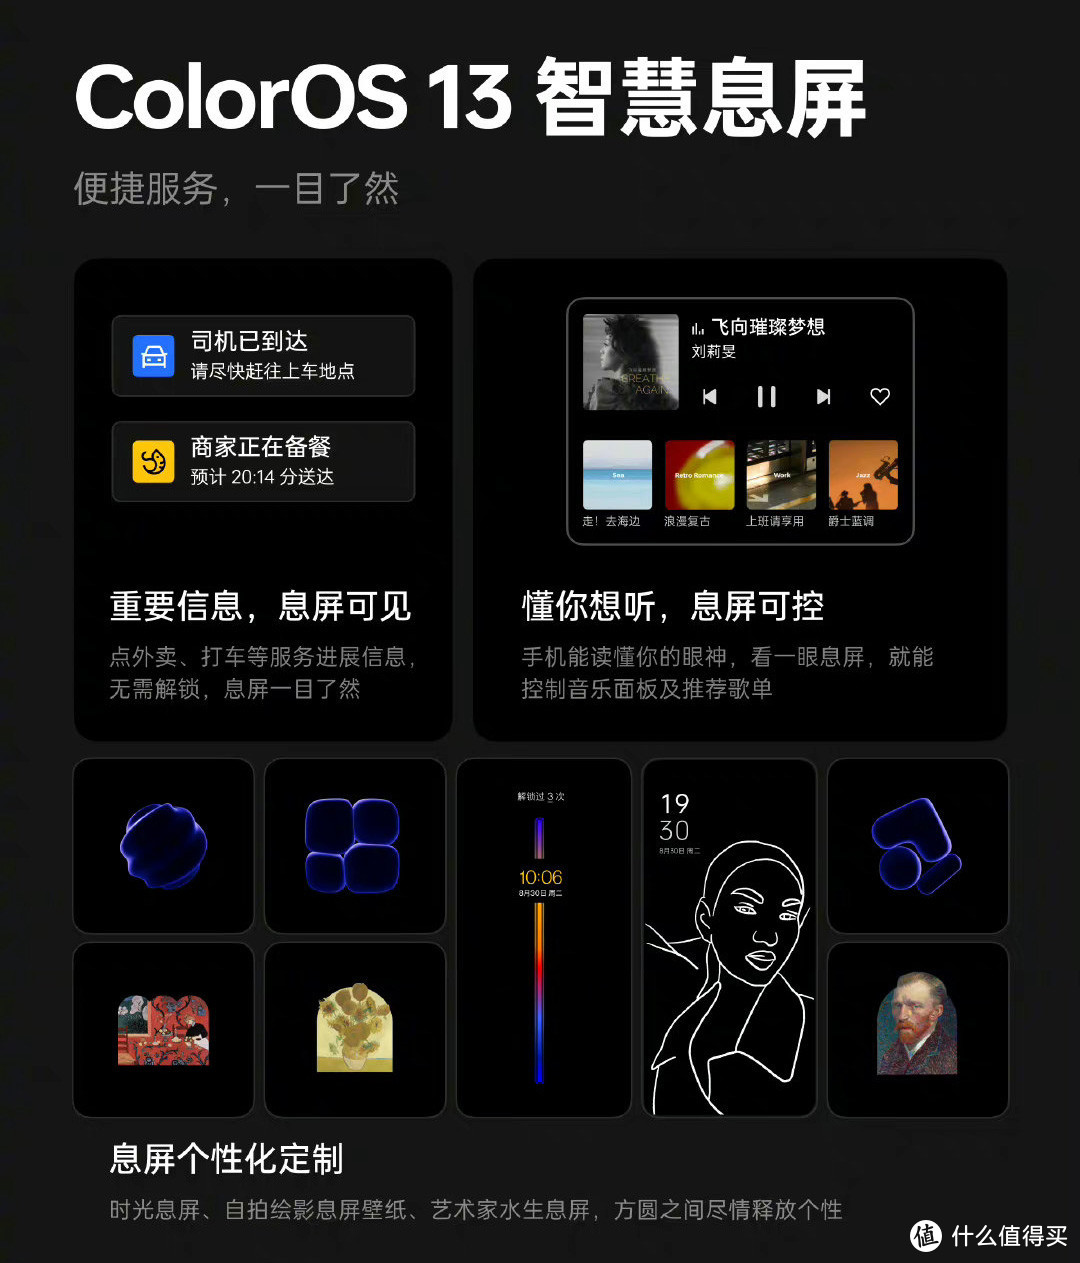 基于安卓13！ColorOS 13正式发布：升级名单公布，骁龙865旗舰在内